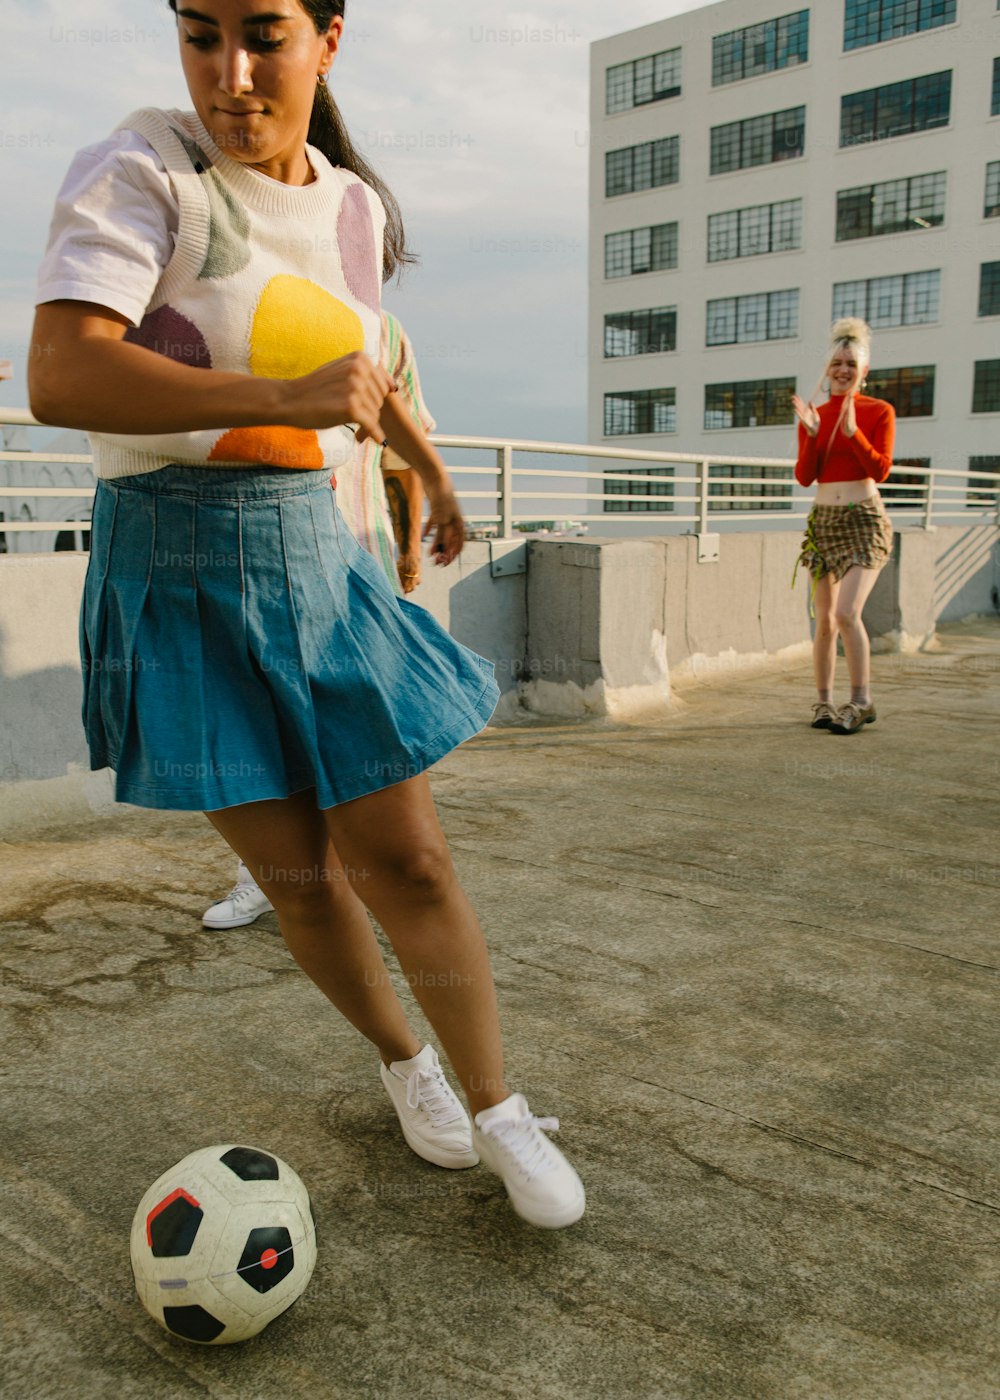 Ball Girl' Sports Skirt / Skort / Shorts